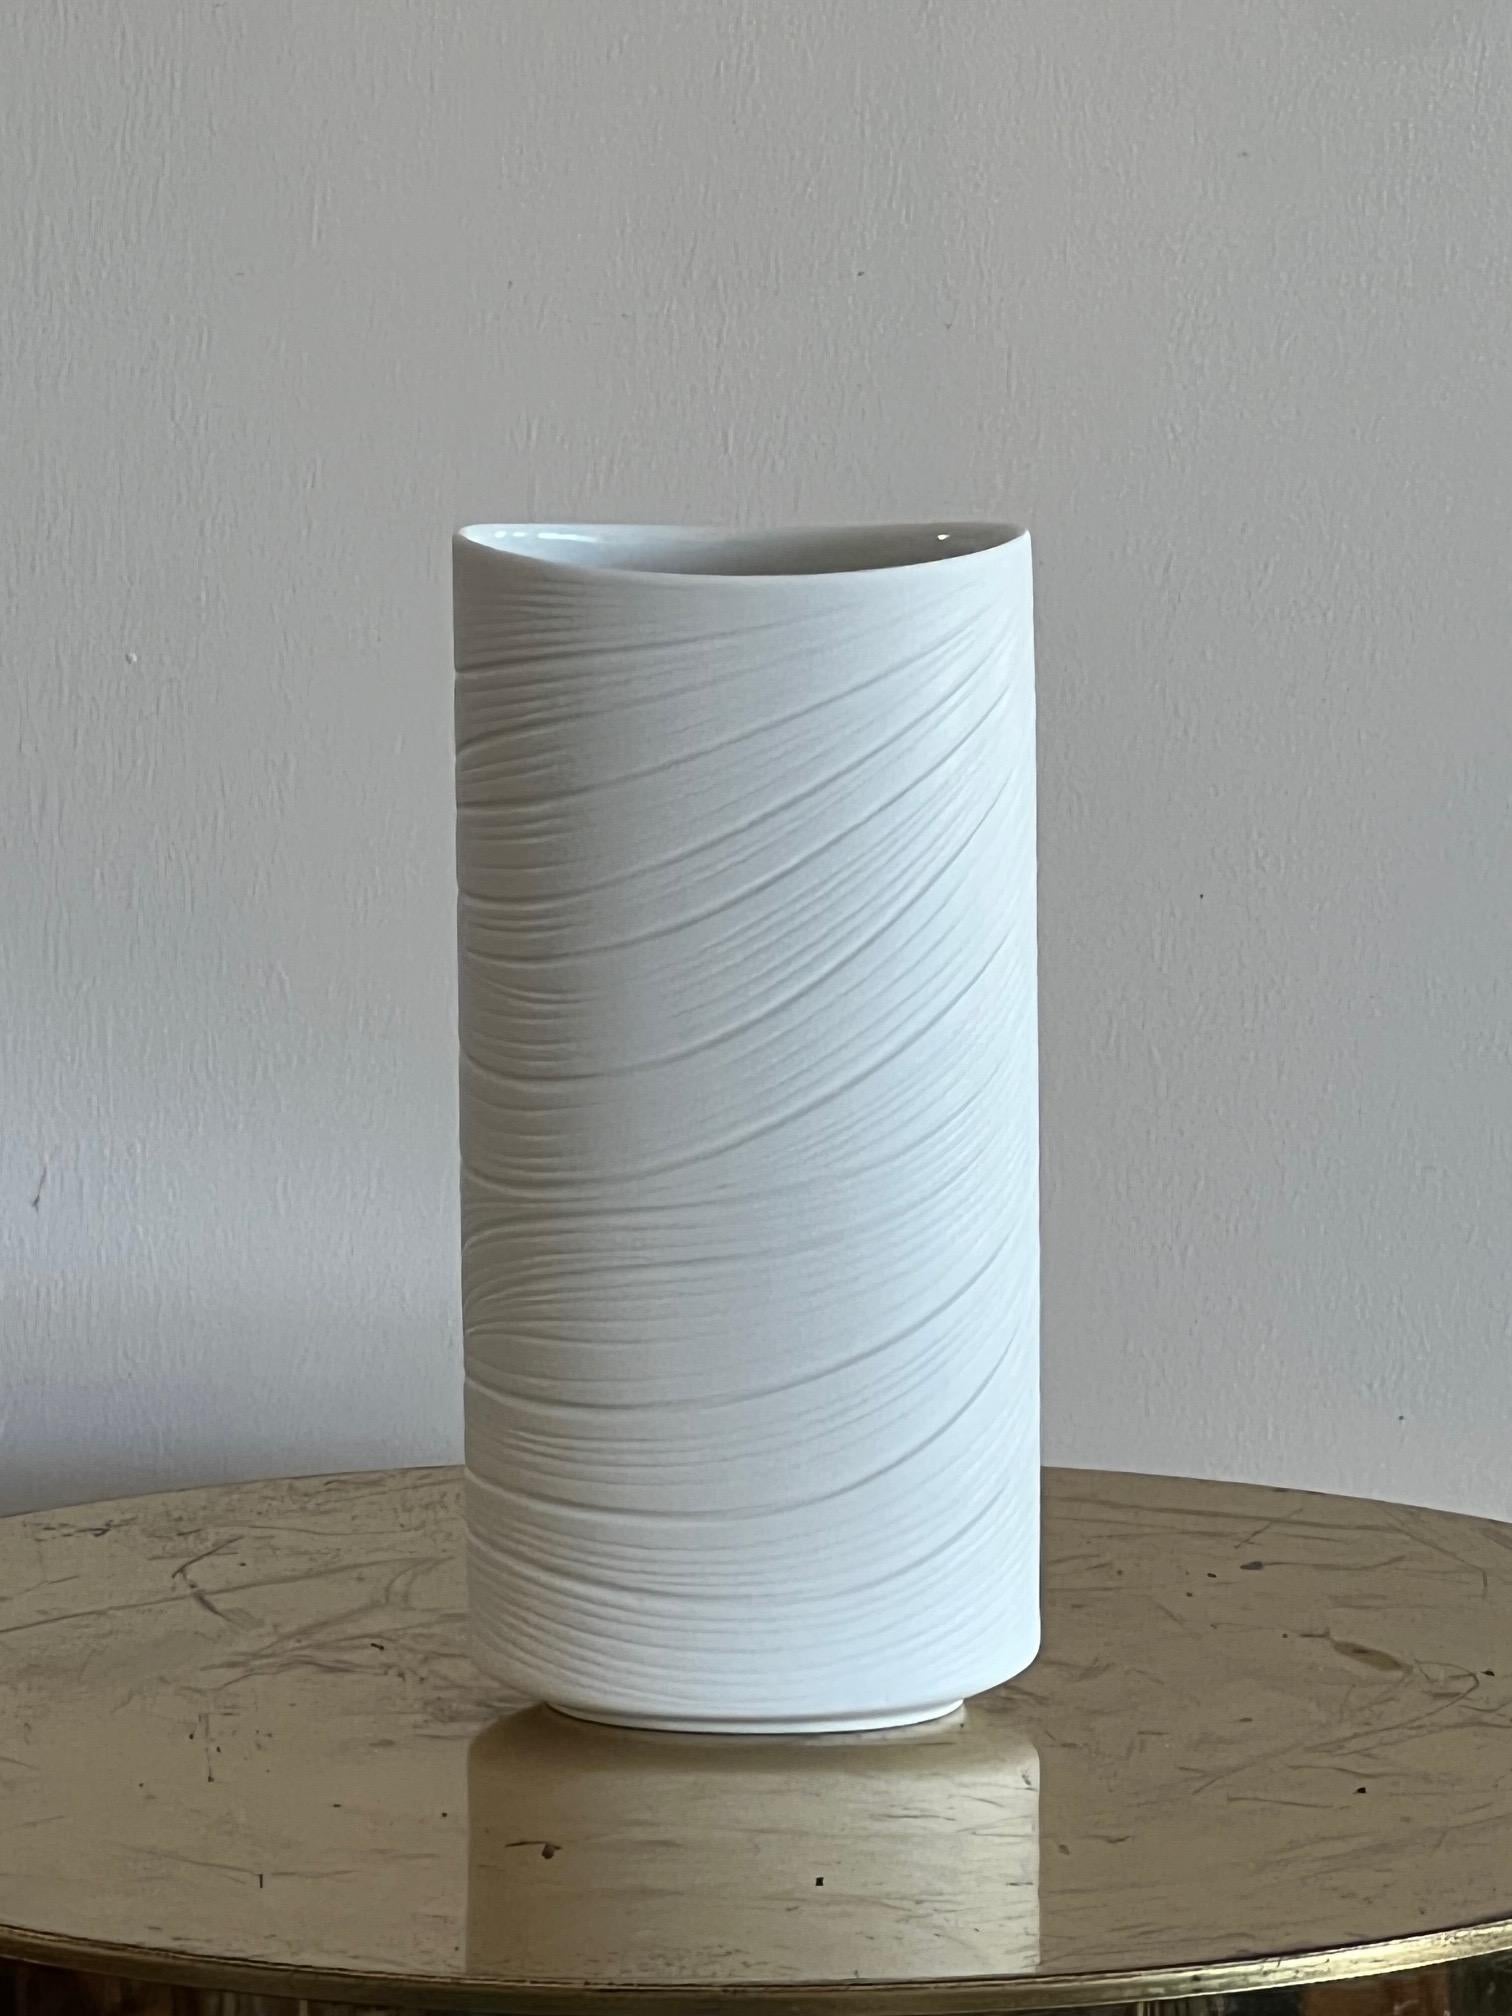 Magnifique vase en porcelaine de M.Freyer, estampillé Rosenthal Studio Line # 3562/22. Un look très années 1970 avec des tourbillons et un effet OP Art.